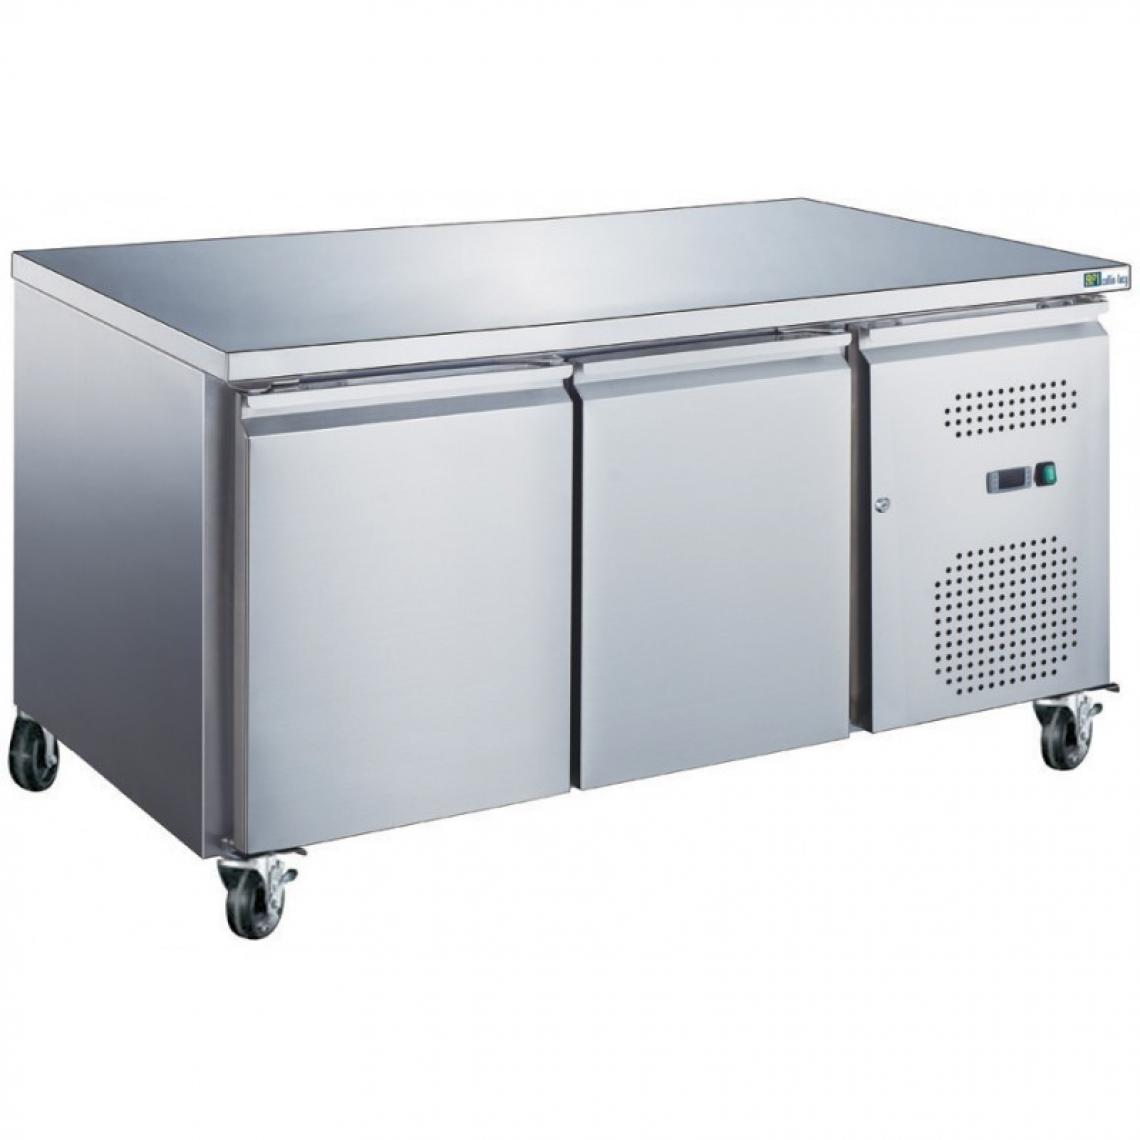 Materiel Chr Pro - Table Réfrigérée Positive GN 1/1 Série STAR - 282 L à 553 L - AFI Collin Lucy - R290Inox2 PortesPleine - Réfrigérateur américain